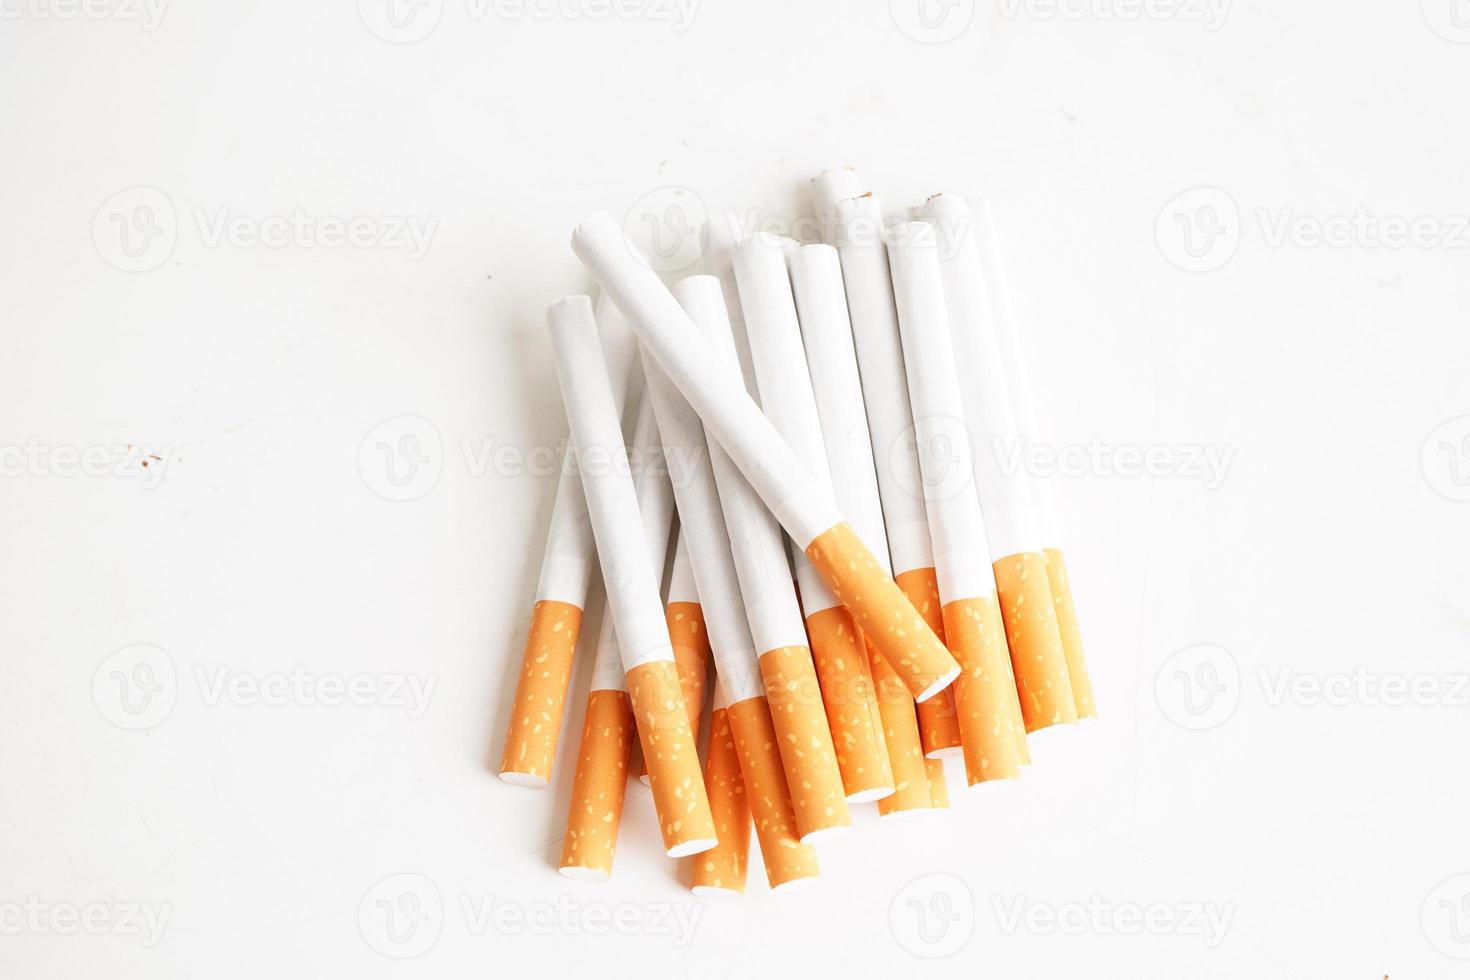 Zigarette isoliert auf weißem Hintergrund mit Beschneidungspfad, Rolltabak in Papier mit Filterrohr, Nichtraucherkonzept. foto